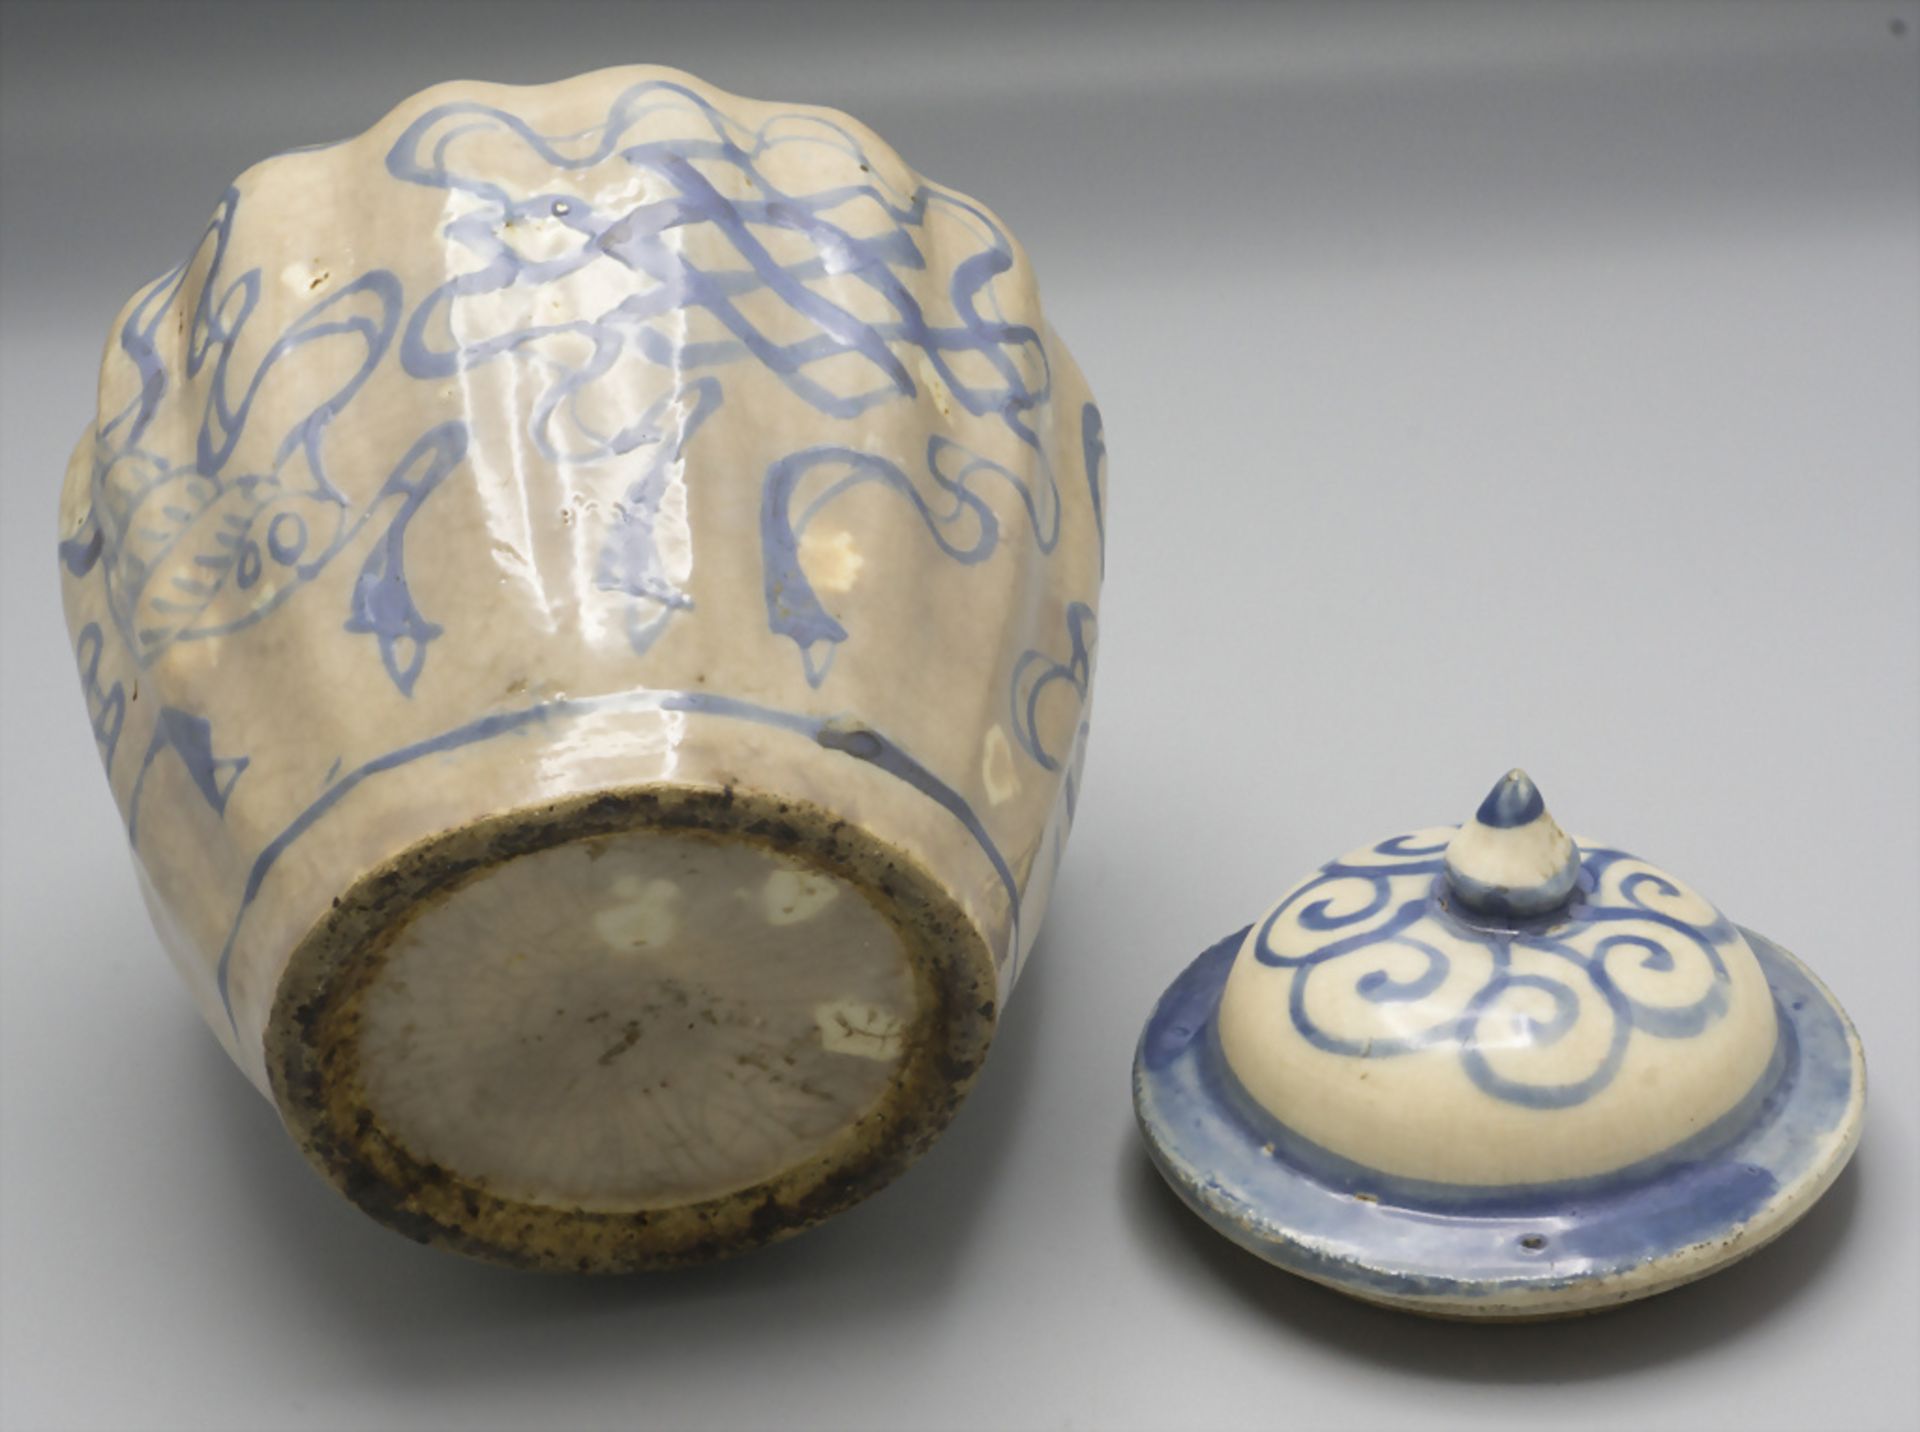 Vorratsbehälter / A ceramic storage jar, wohl China oder Tibet, 18. Jh - Bild 6 aus 6